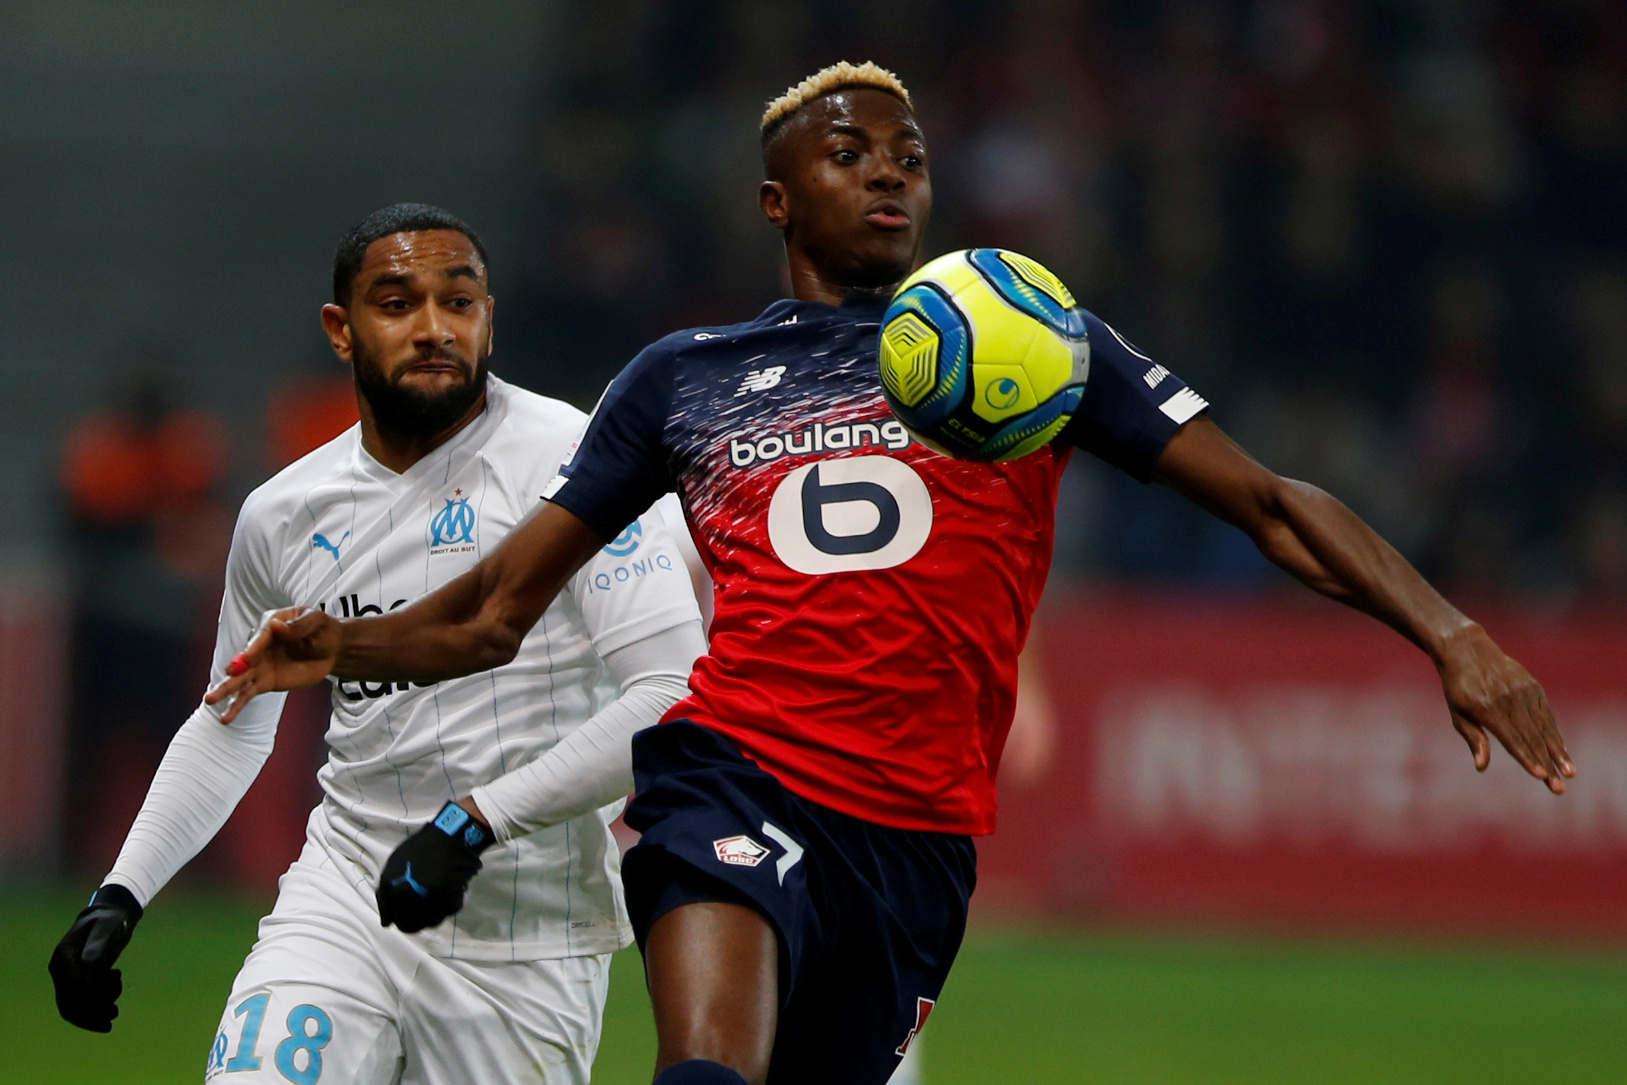 Ξεκινάει η Ligue 1: Το πρόγραμμα στην πρώτη αγωνιστική